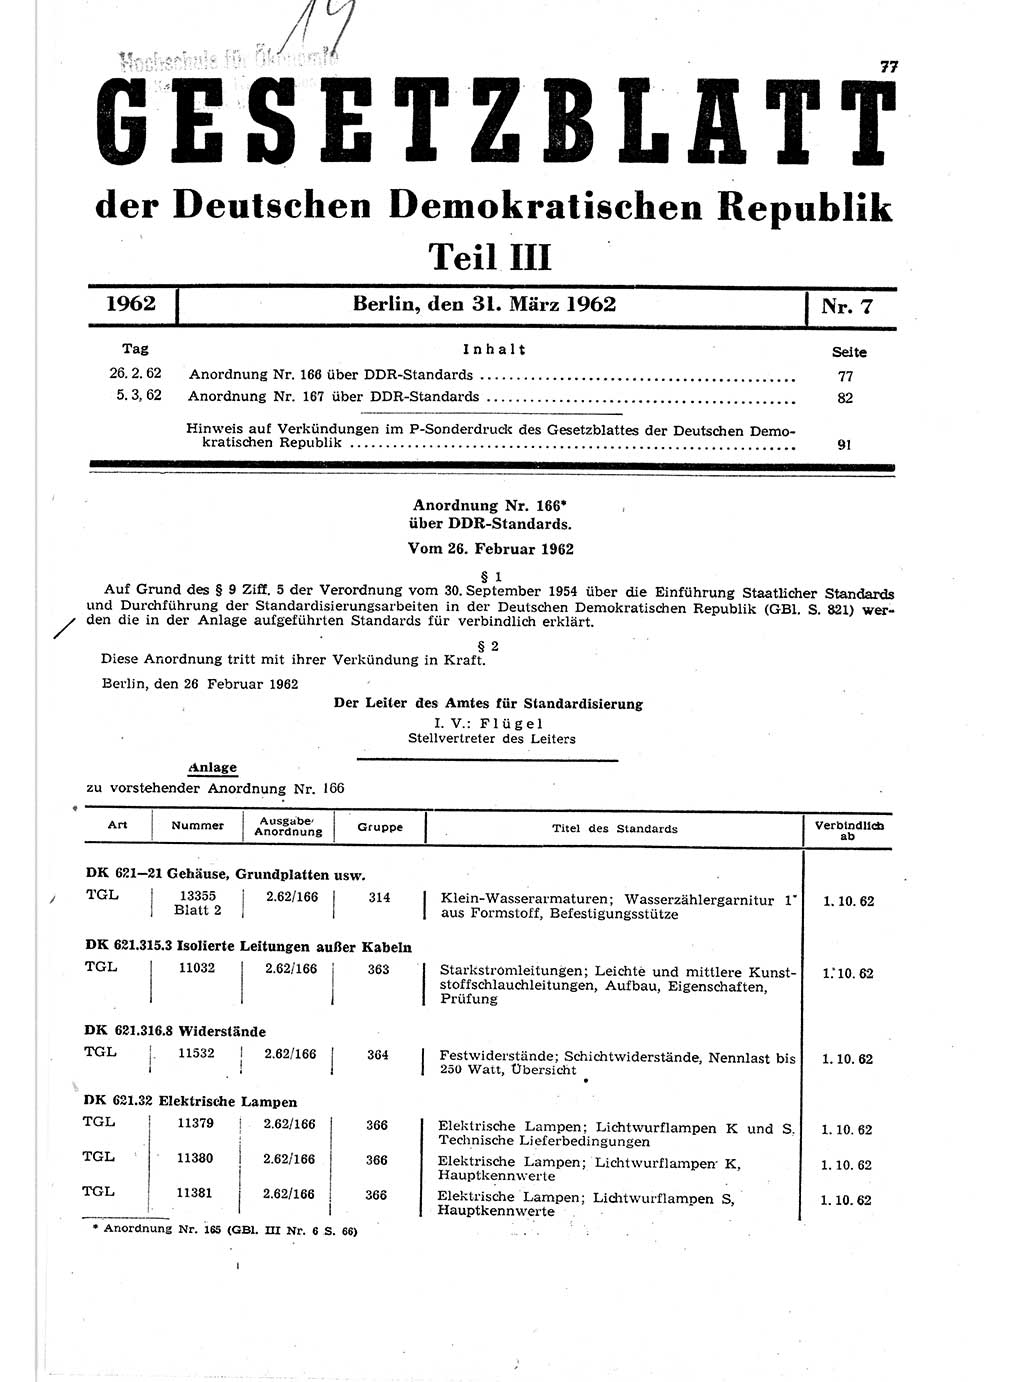 Gesetzblatt (GBl.) der Deutschen Demokratischen Republik (DDR) Teil ⅠⅠⅠ 1962, Seite 77 (GBl. DDR ⅠⅠⅠ 1962, S. 77)